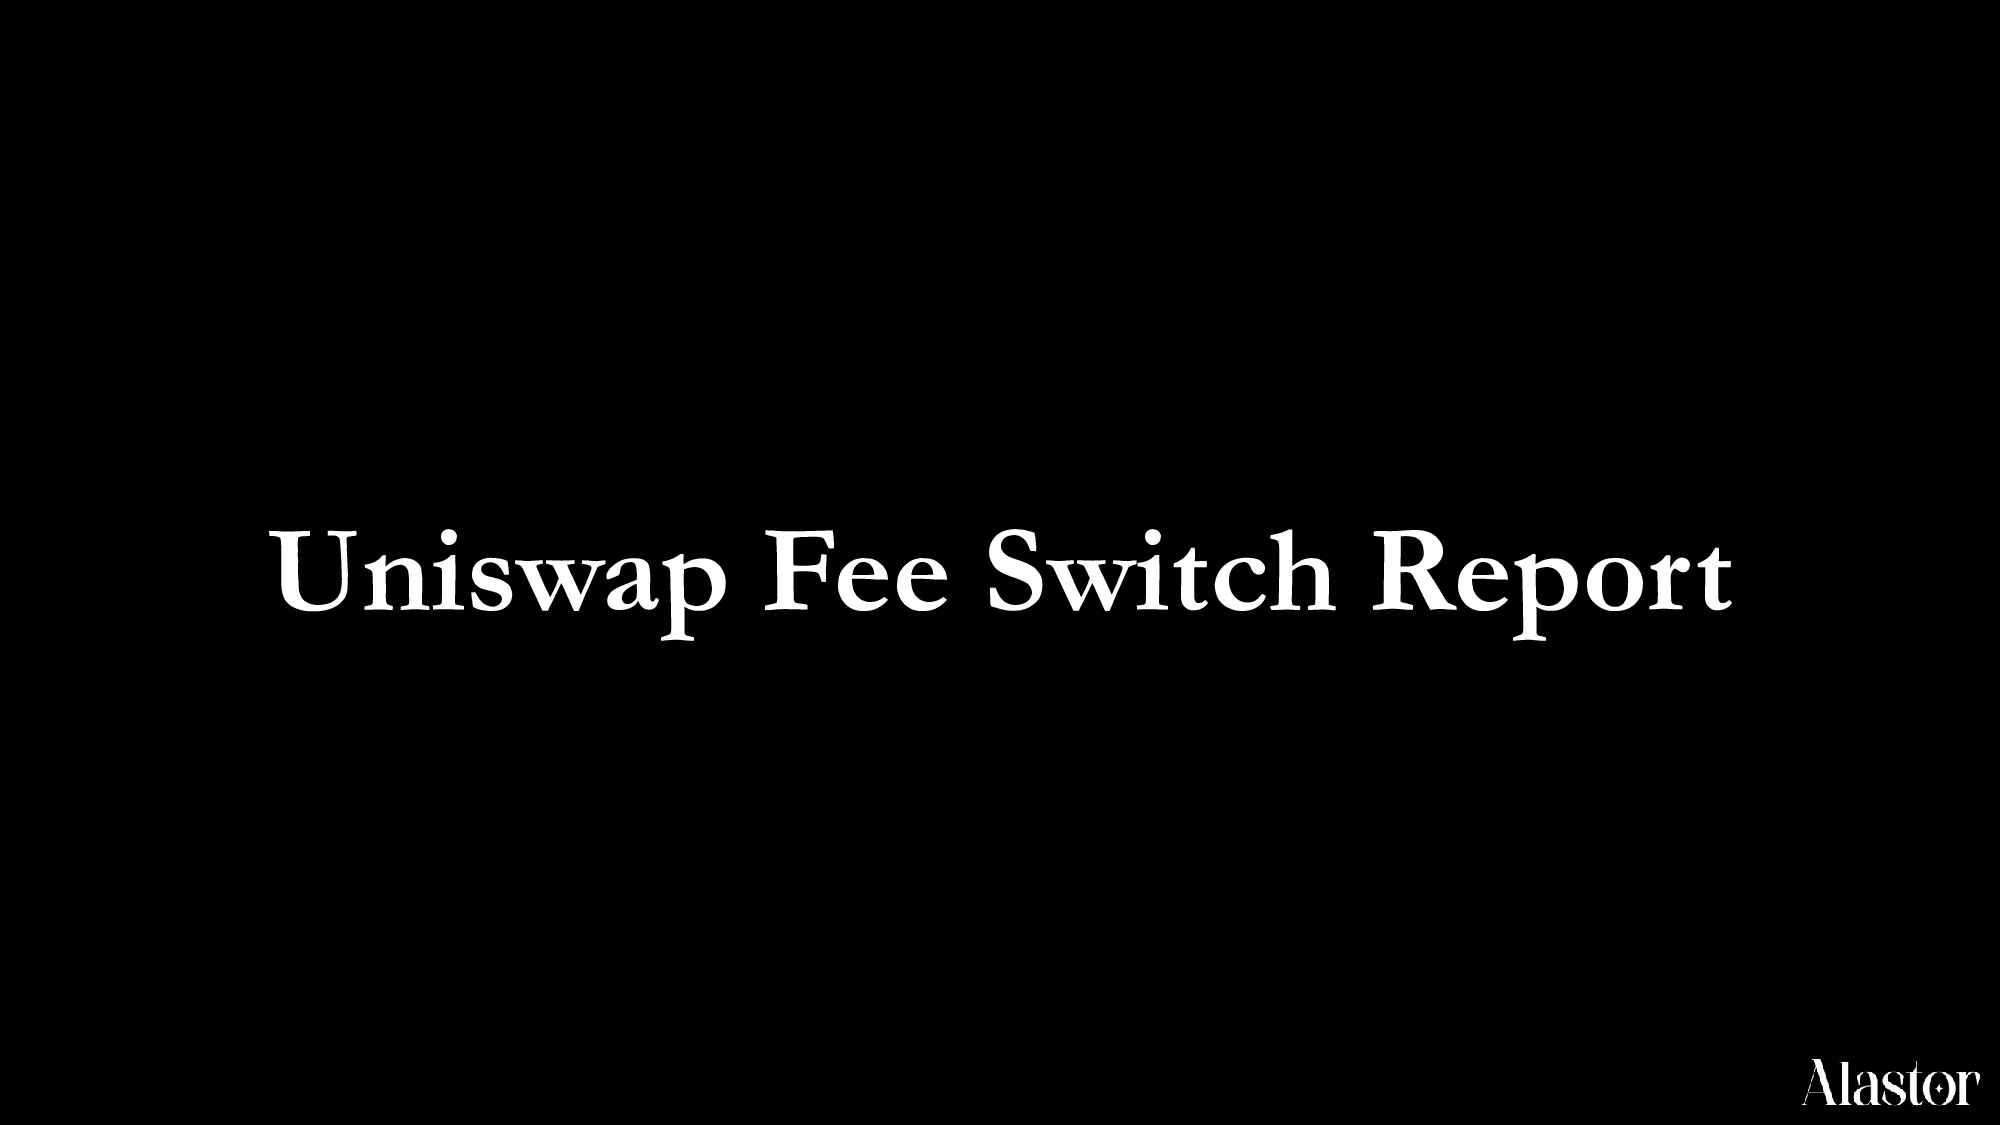 Uniswap Fee Switch Process & Strategy